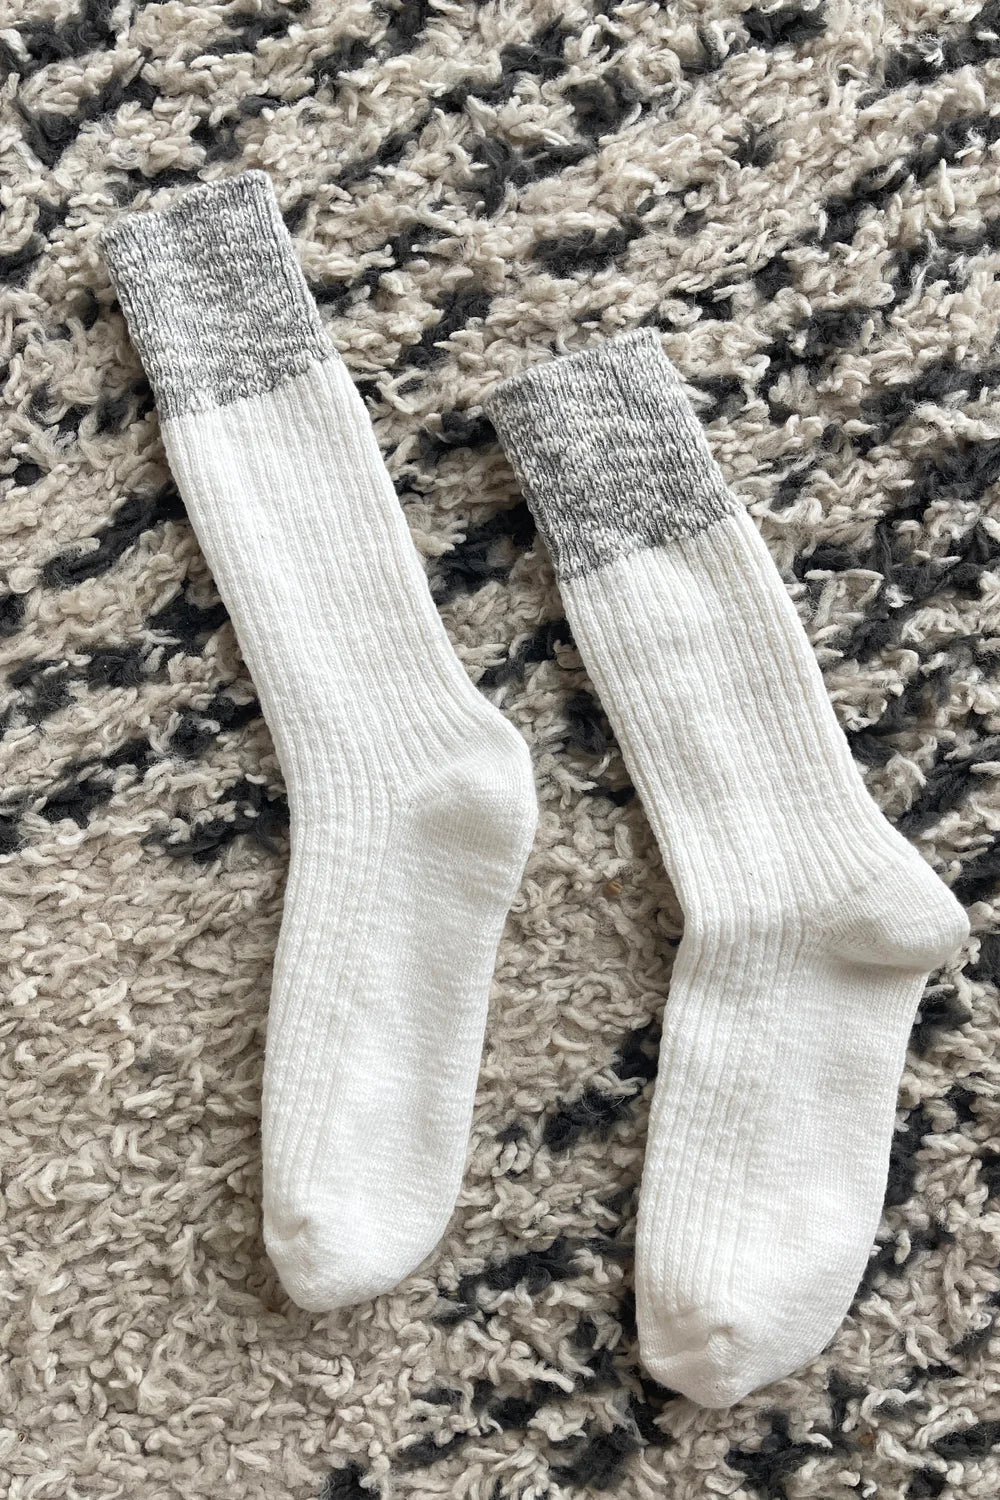 Le Bon Shoppe | Colour Block Cottage Socks - White Linen/H.T Grey